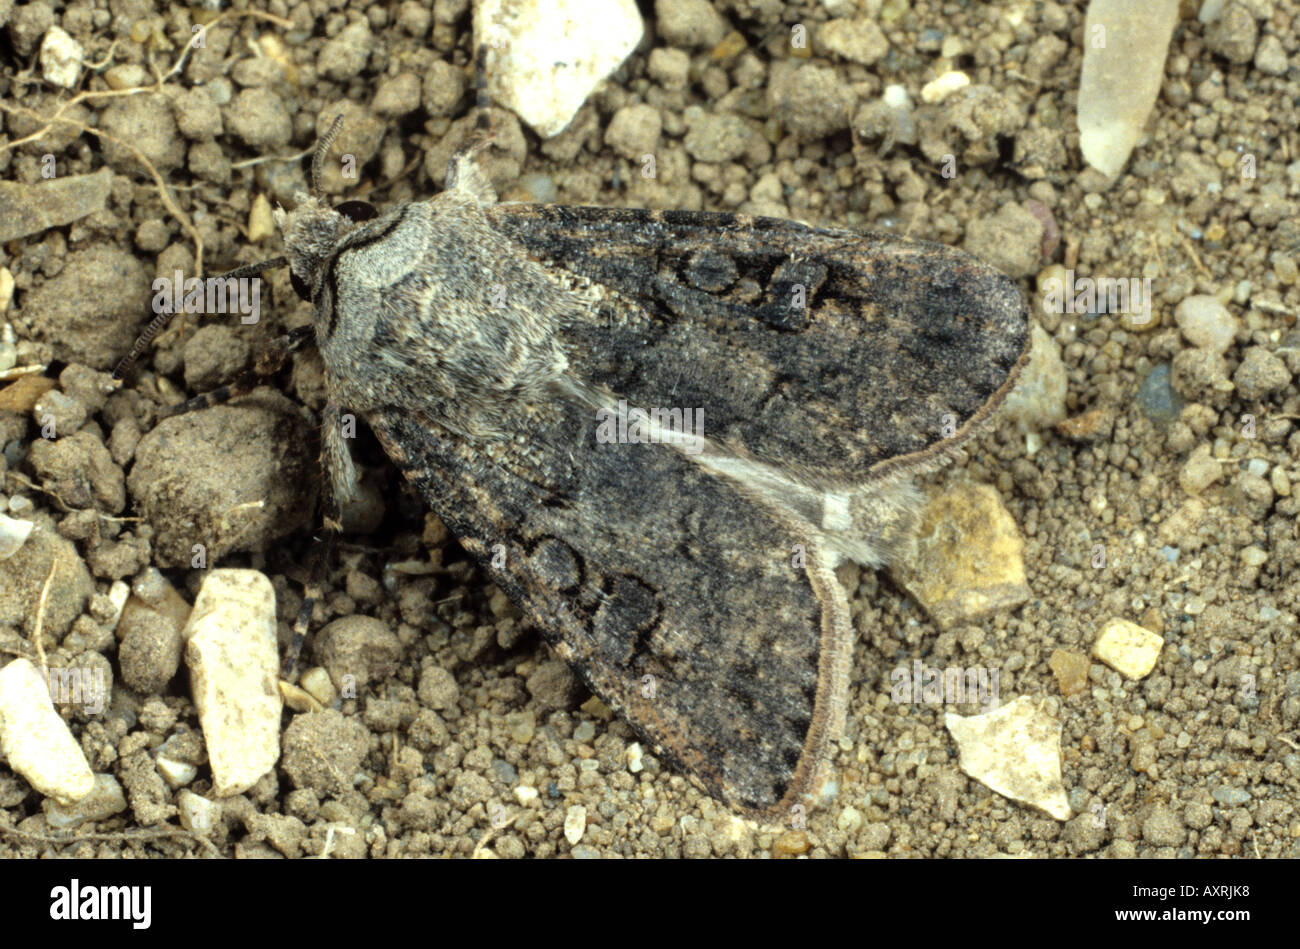 Turnip cutworm Agrotis ipsilon moth on soil surface Stock Photo